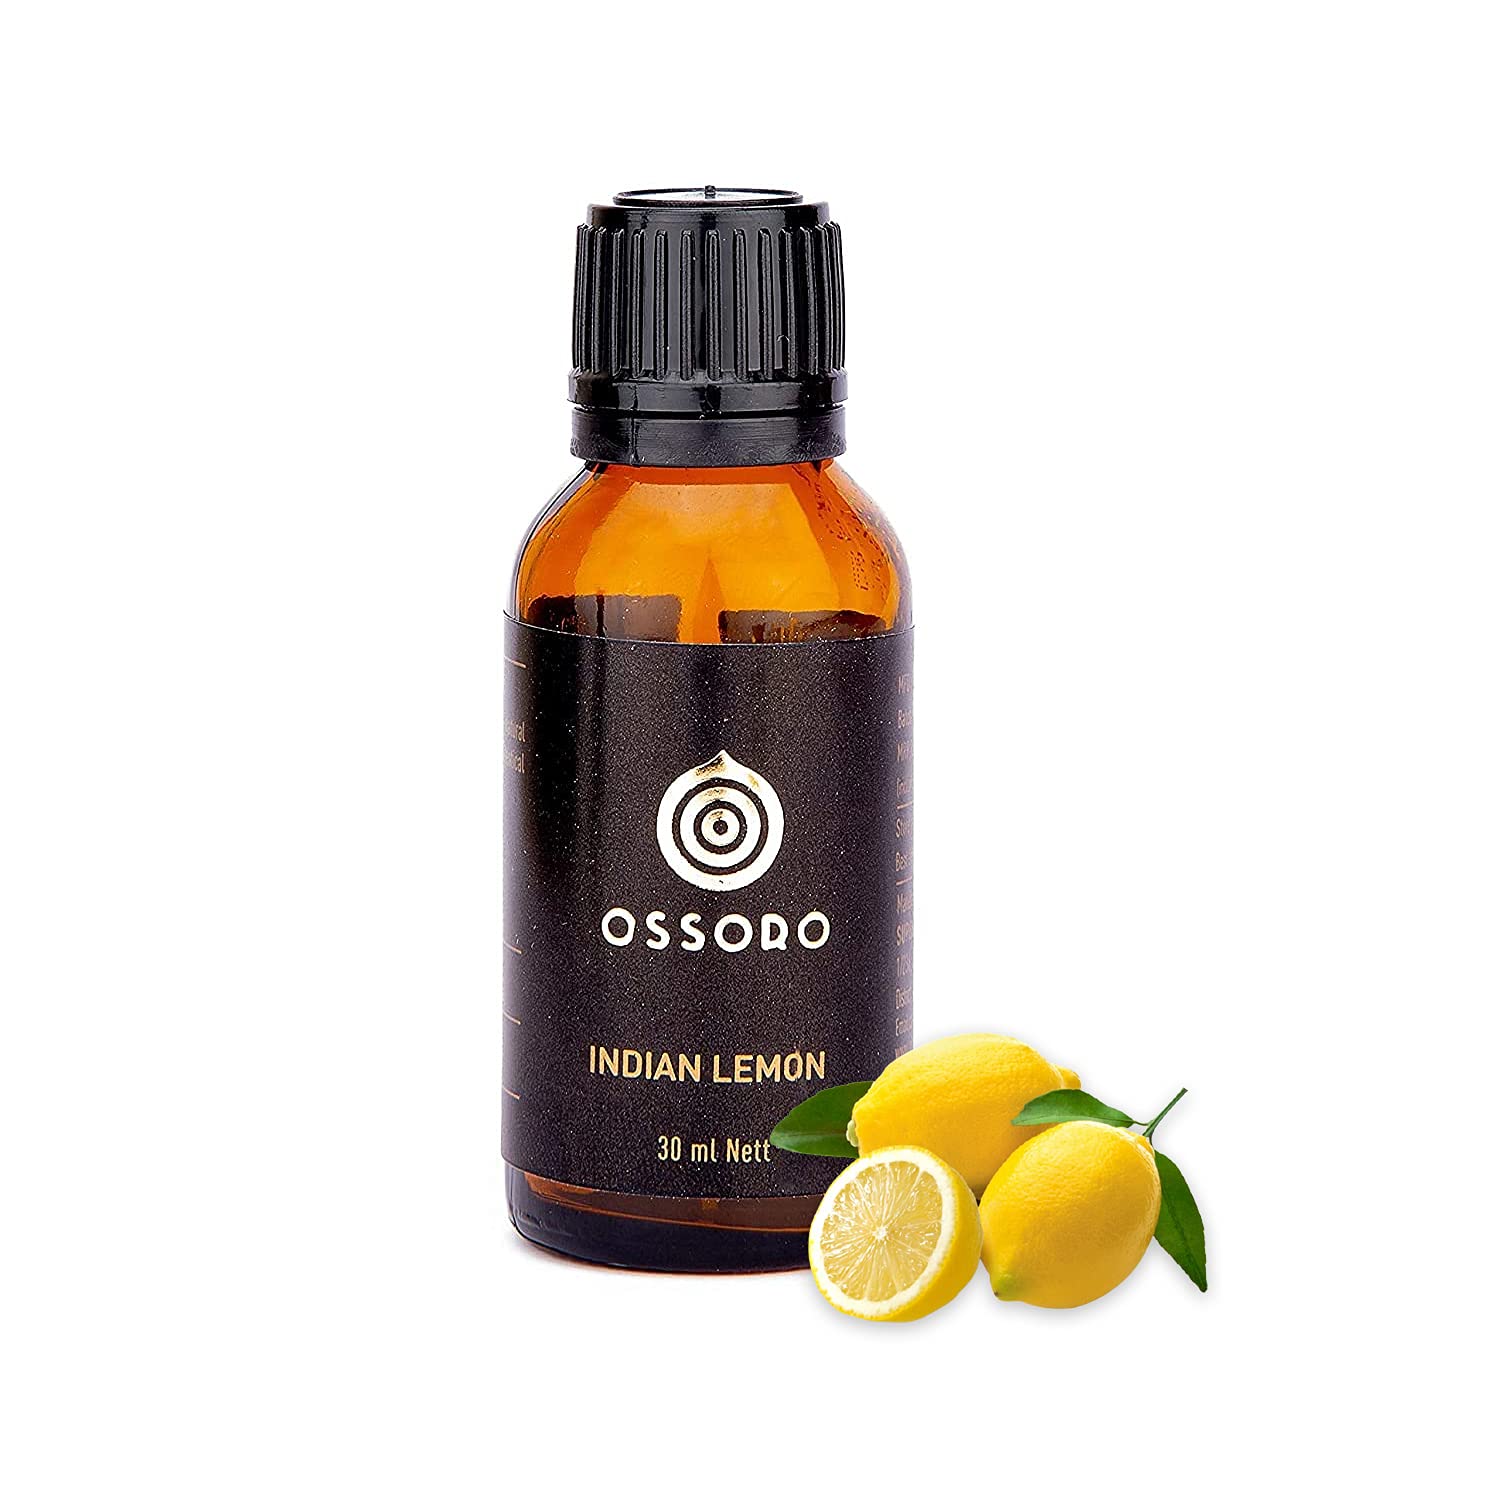 Ossoro Indian Lemon Image